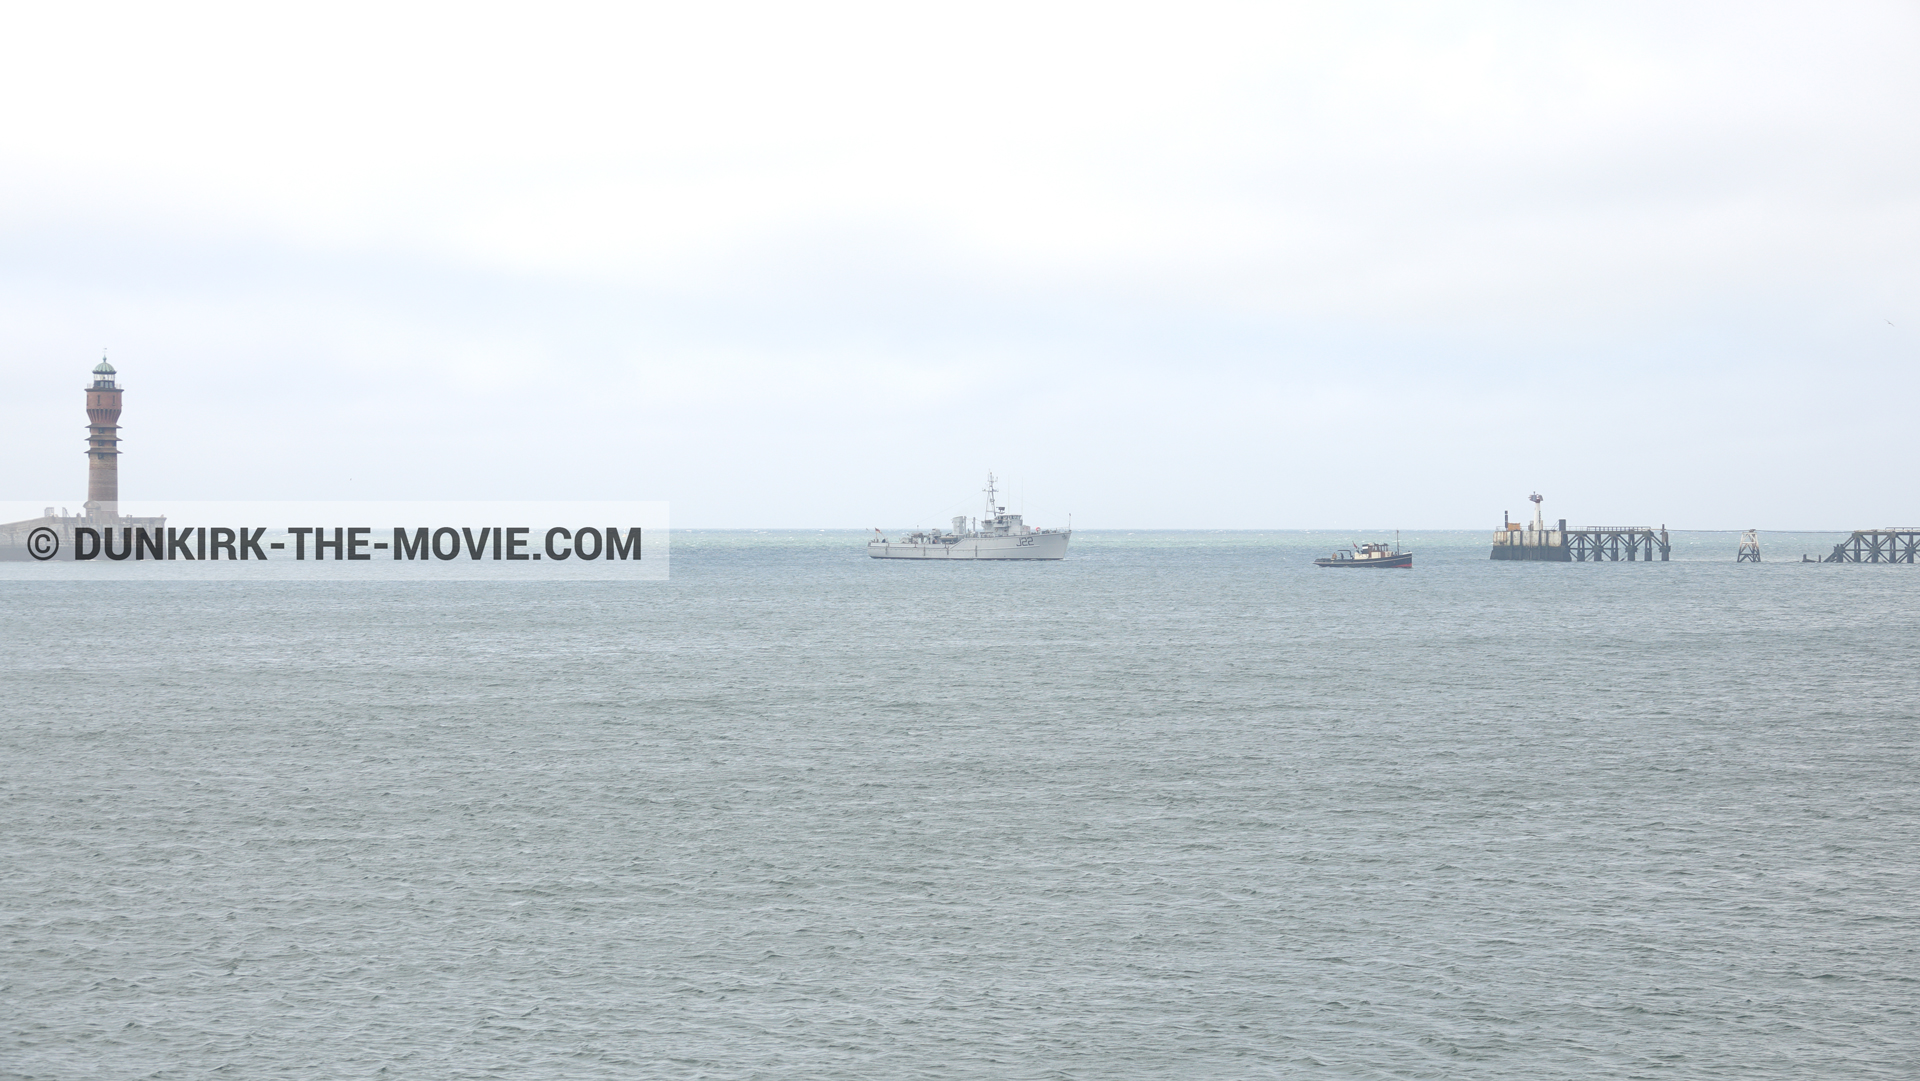 Fotos con barco, J22 -Hr.Ms. Naaldwijk, faro de Saint-Pol-sur-Mer,  durante el rodaje de la película Dunkerque de Nolan